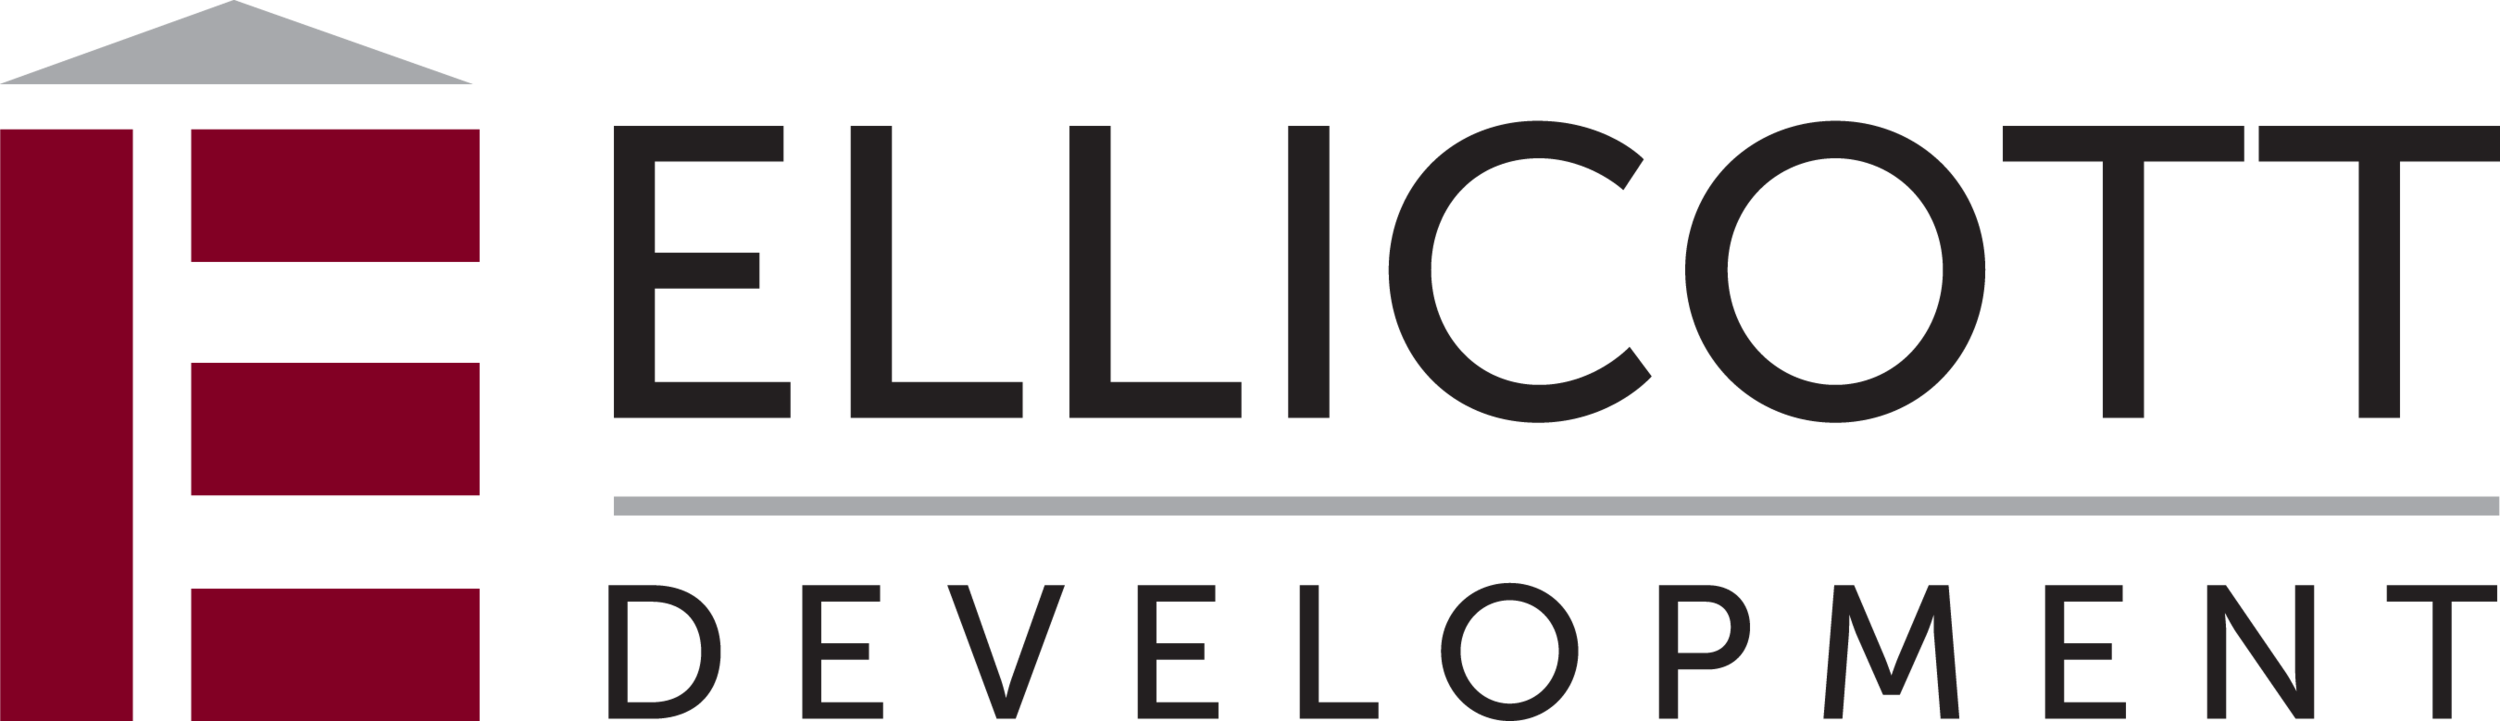 Ellicott Dev logo_horz_lg.png